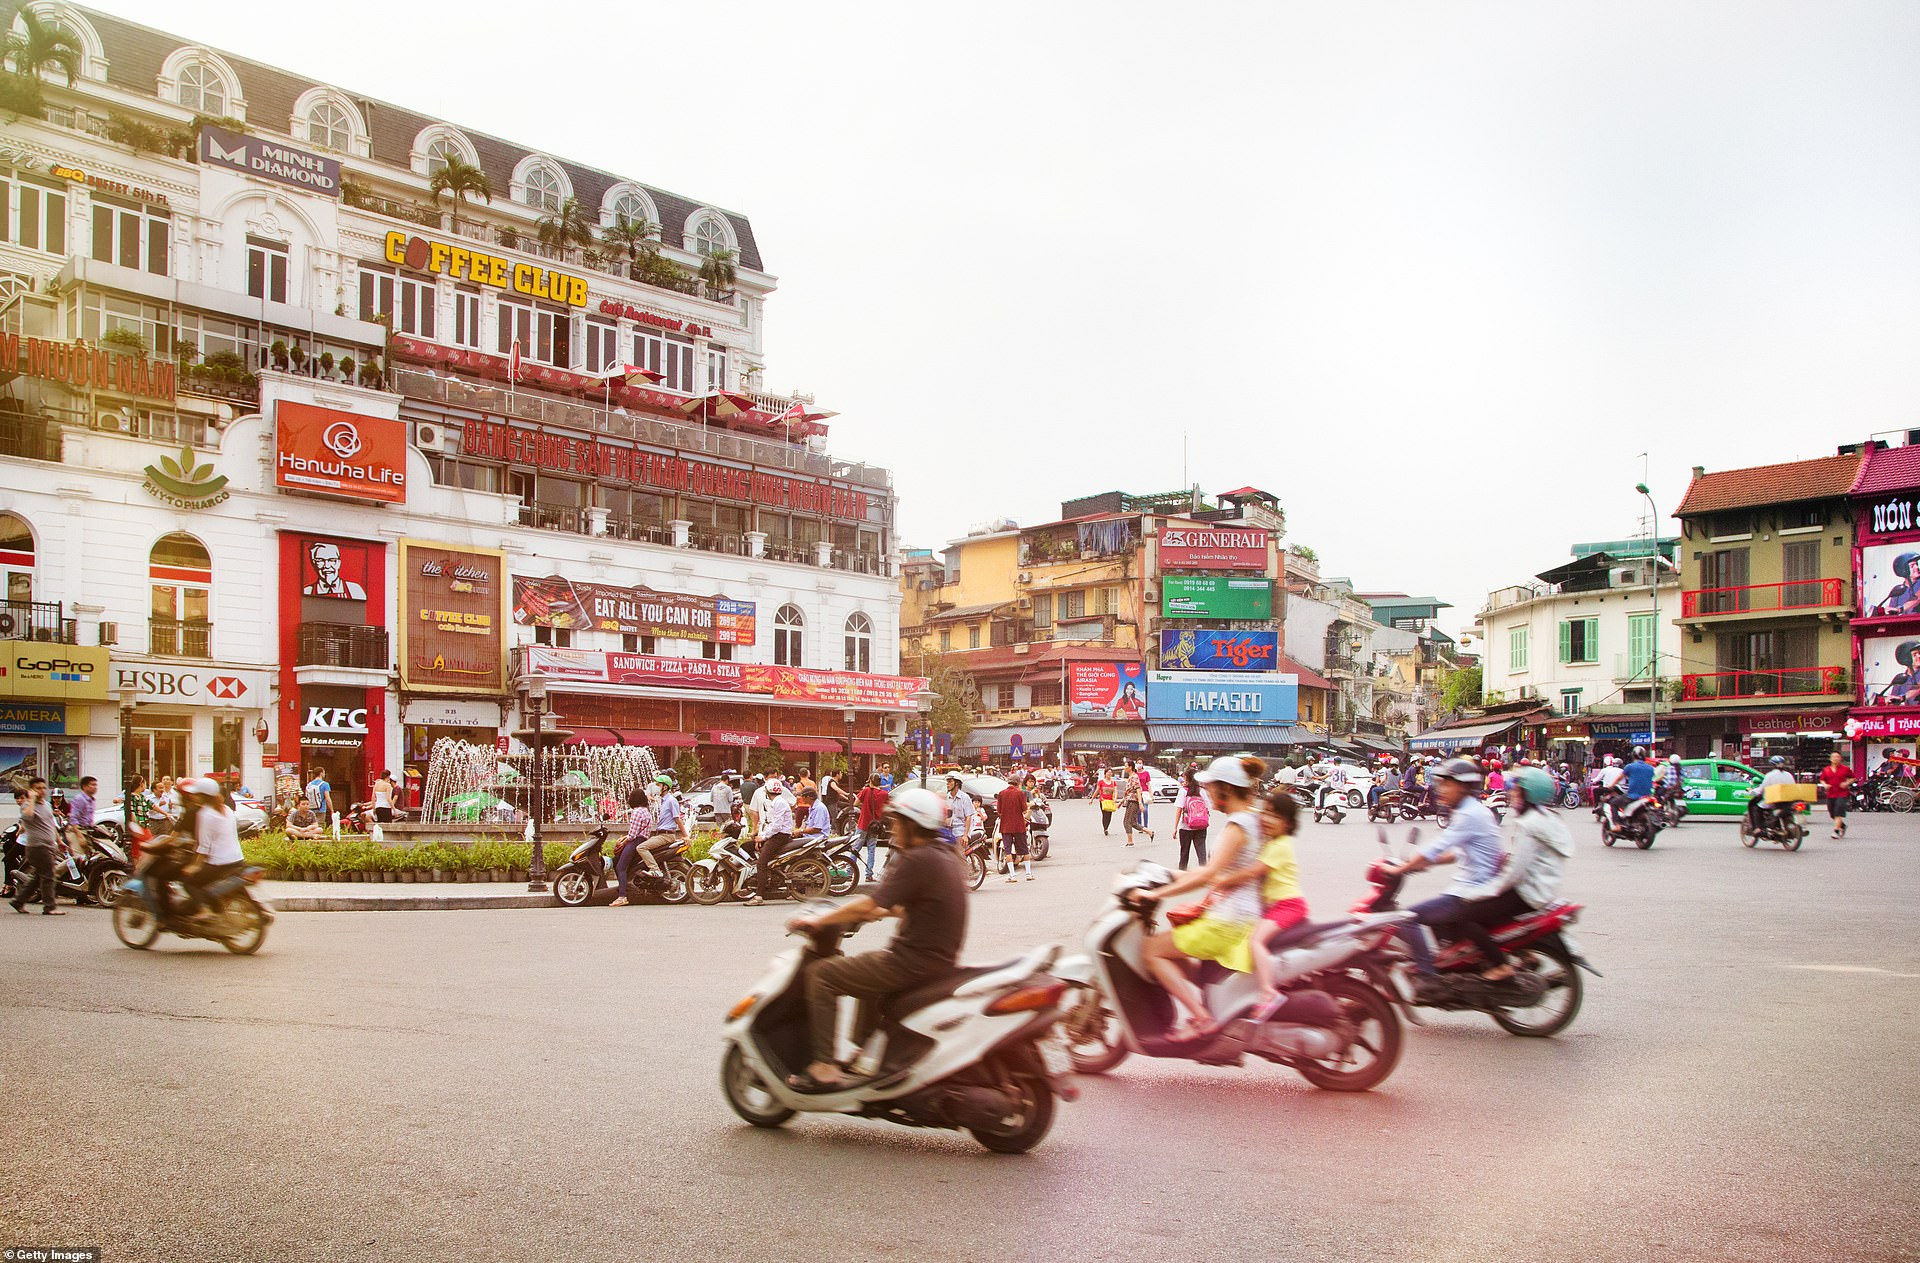 Xe cộ qua lại tại Quảng trường Đông Kinh Nghĩa Thục ở quận Hoàn Kiếm, Hà Nội - thành phố có dân số khoảng 7,5 triệu người.